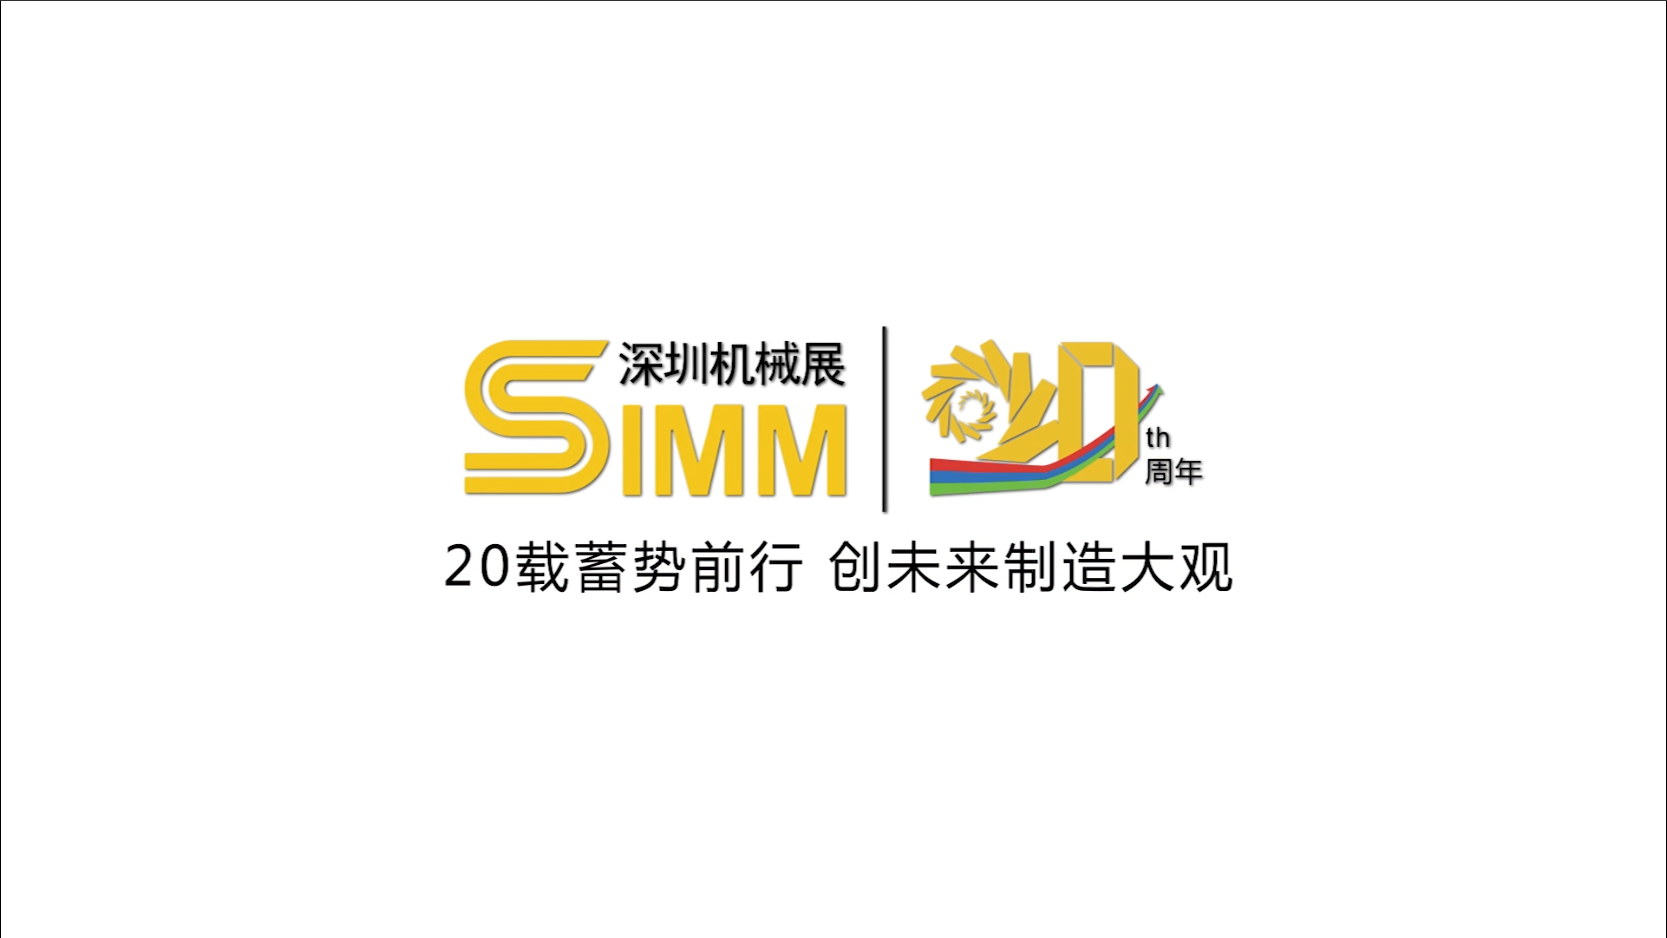 从SIMM深圳机械展到ITES深圳工业展，20年发展历程一览